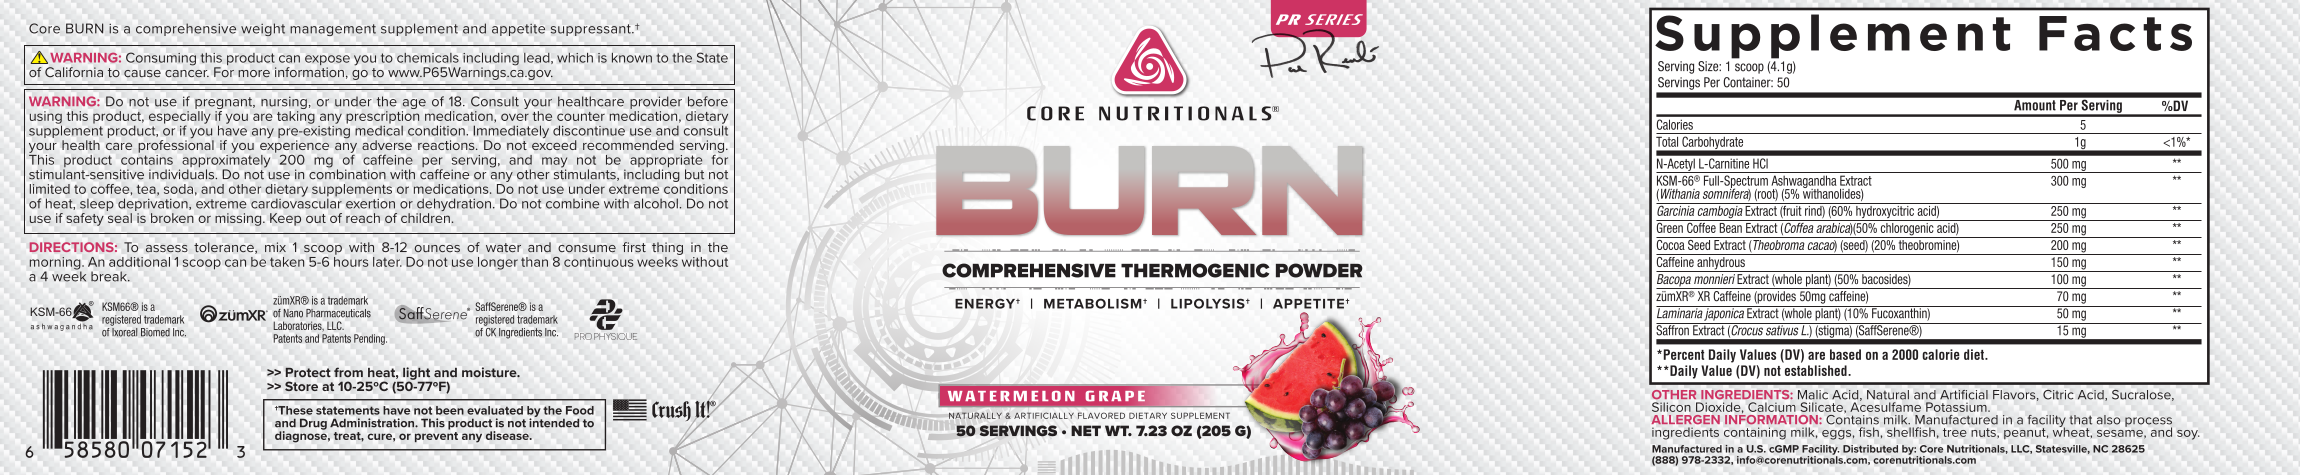 Core Nutritionals BURN Label